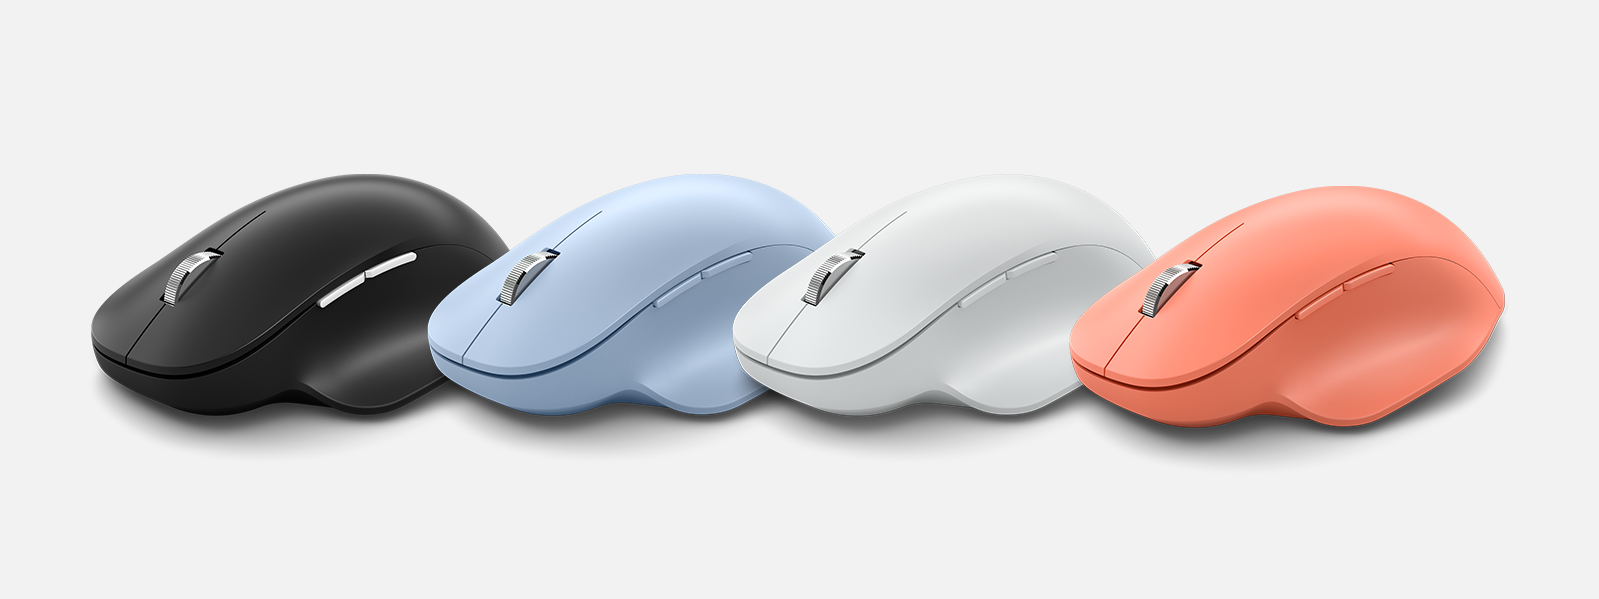 Microsoft Bluetooth® Ergonomic Mouse в четырех расцветках: чёрный, голуой, серый, кирпичный